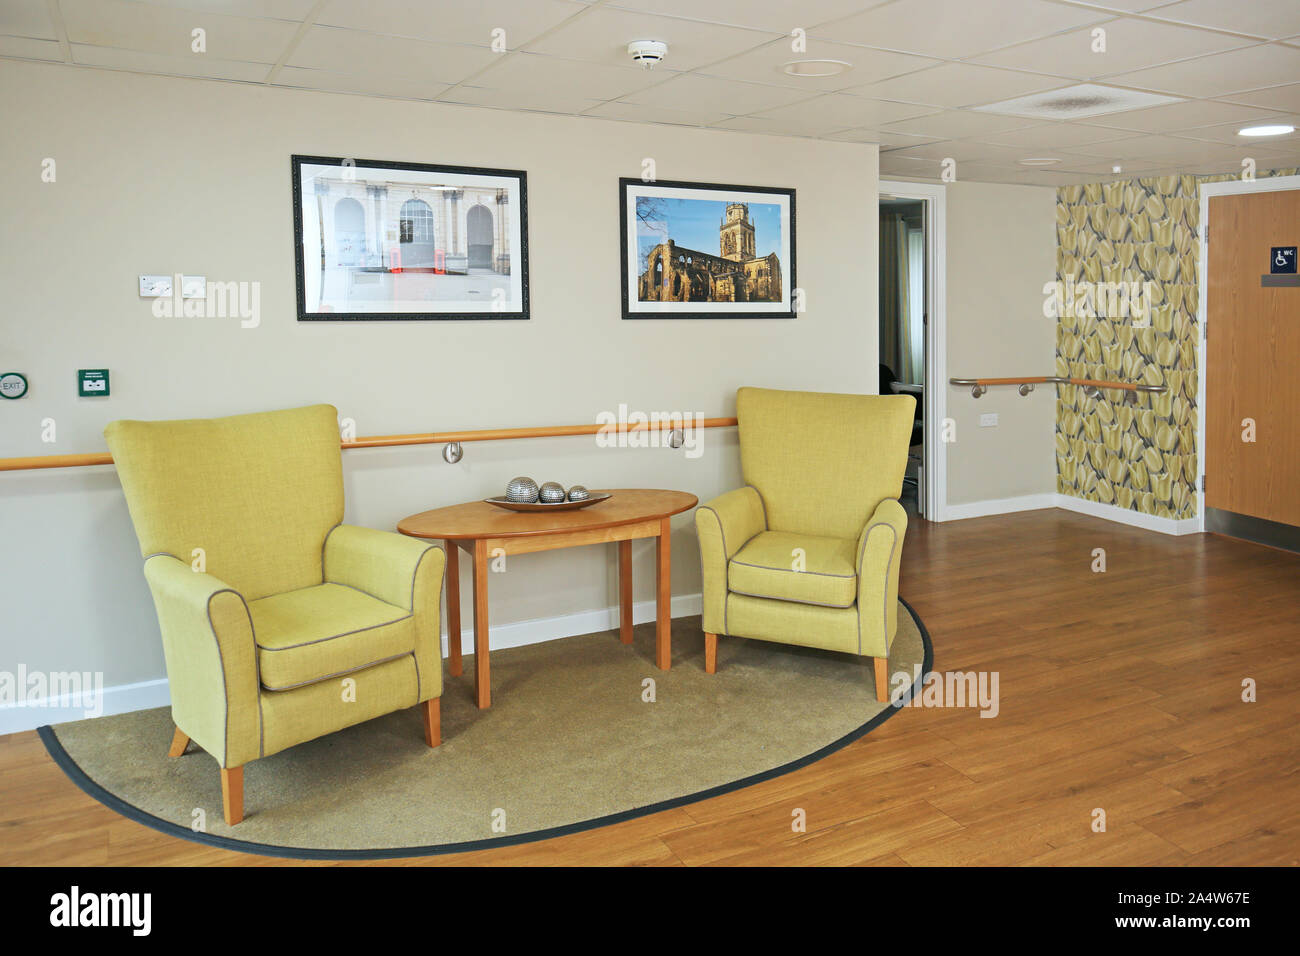 Innenraum eines neu renovierten Care Home in der Nähe von Wakefield, Großbritannien. Zeigt helle Farben, Tapeten, Sesseln und Sicherheit Handläufe. Stockfoto